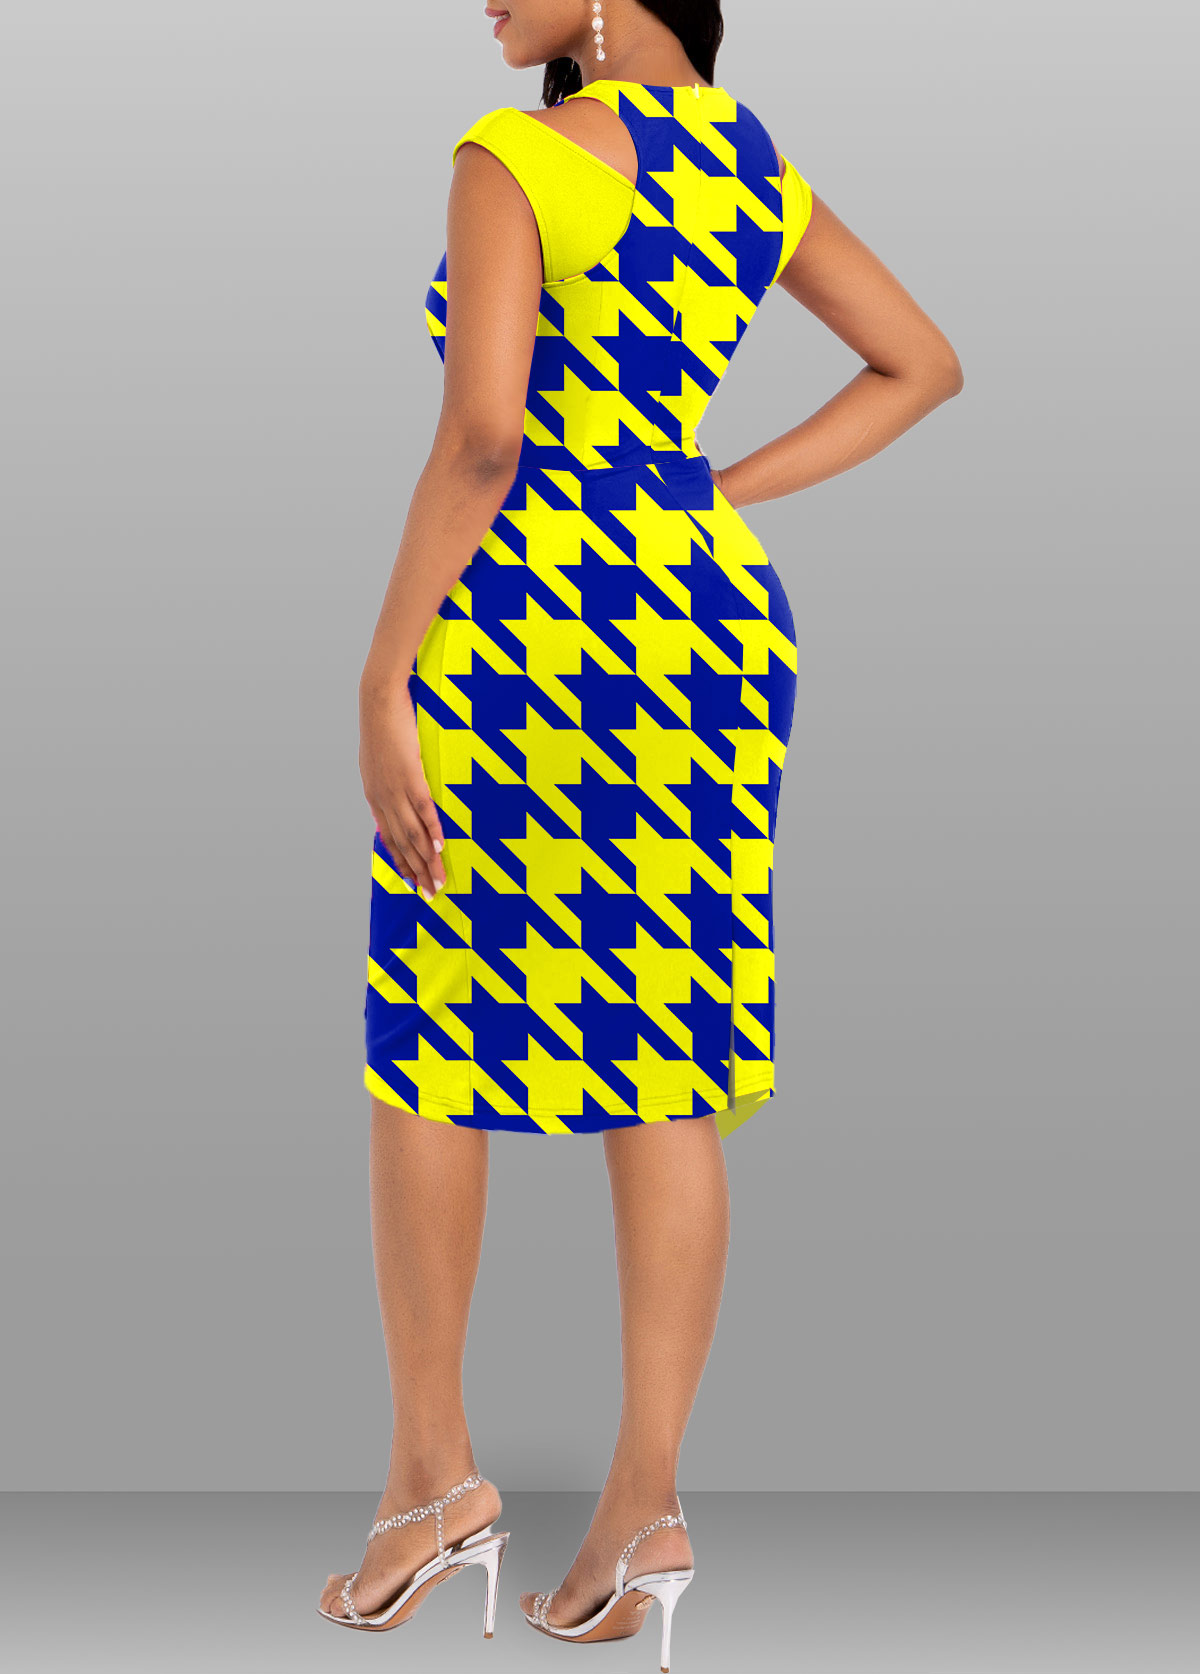 Geometric Print Twist Yellow Bodycon Round Neck Dress